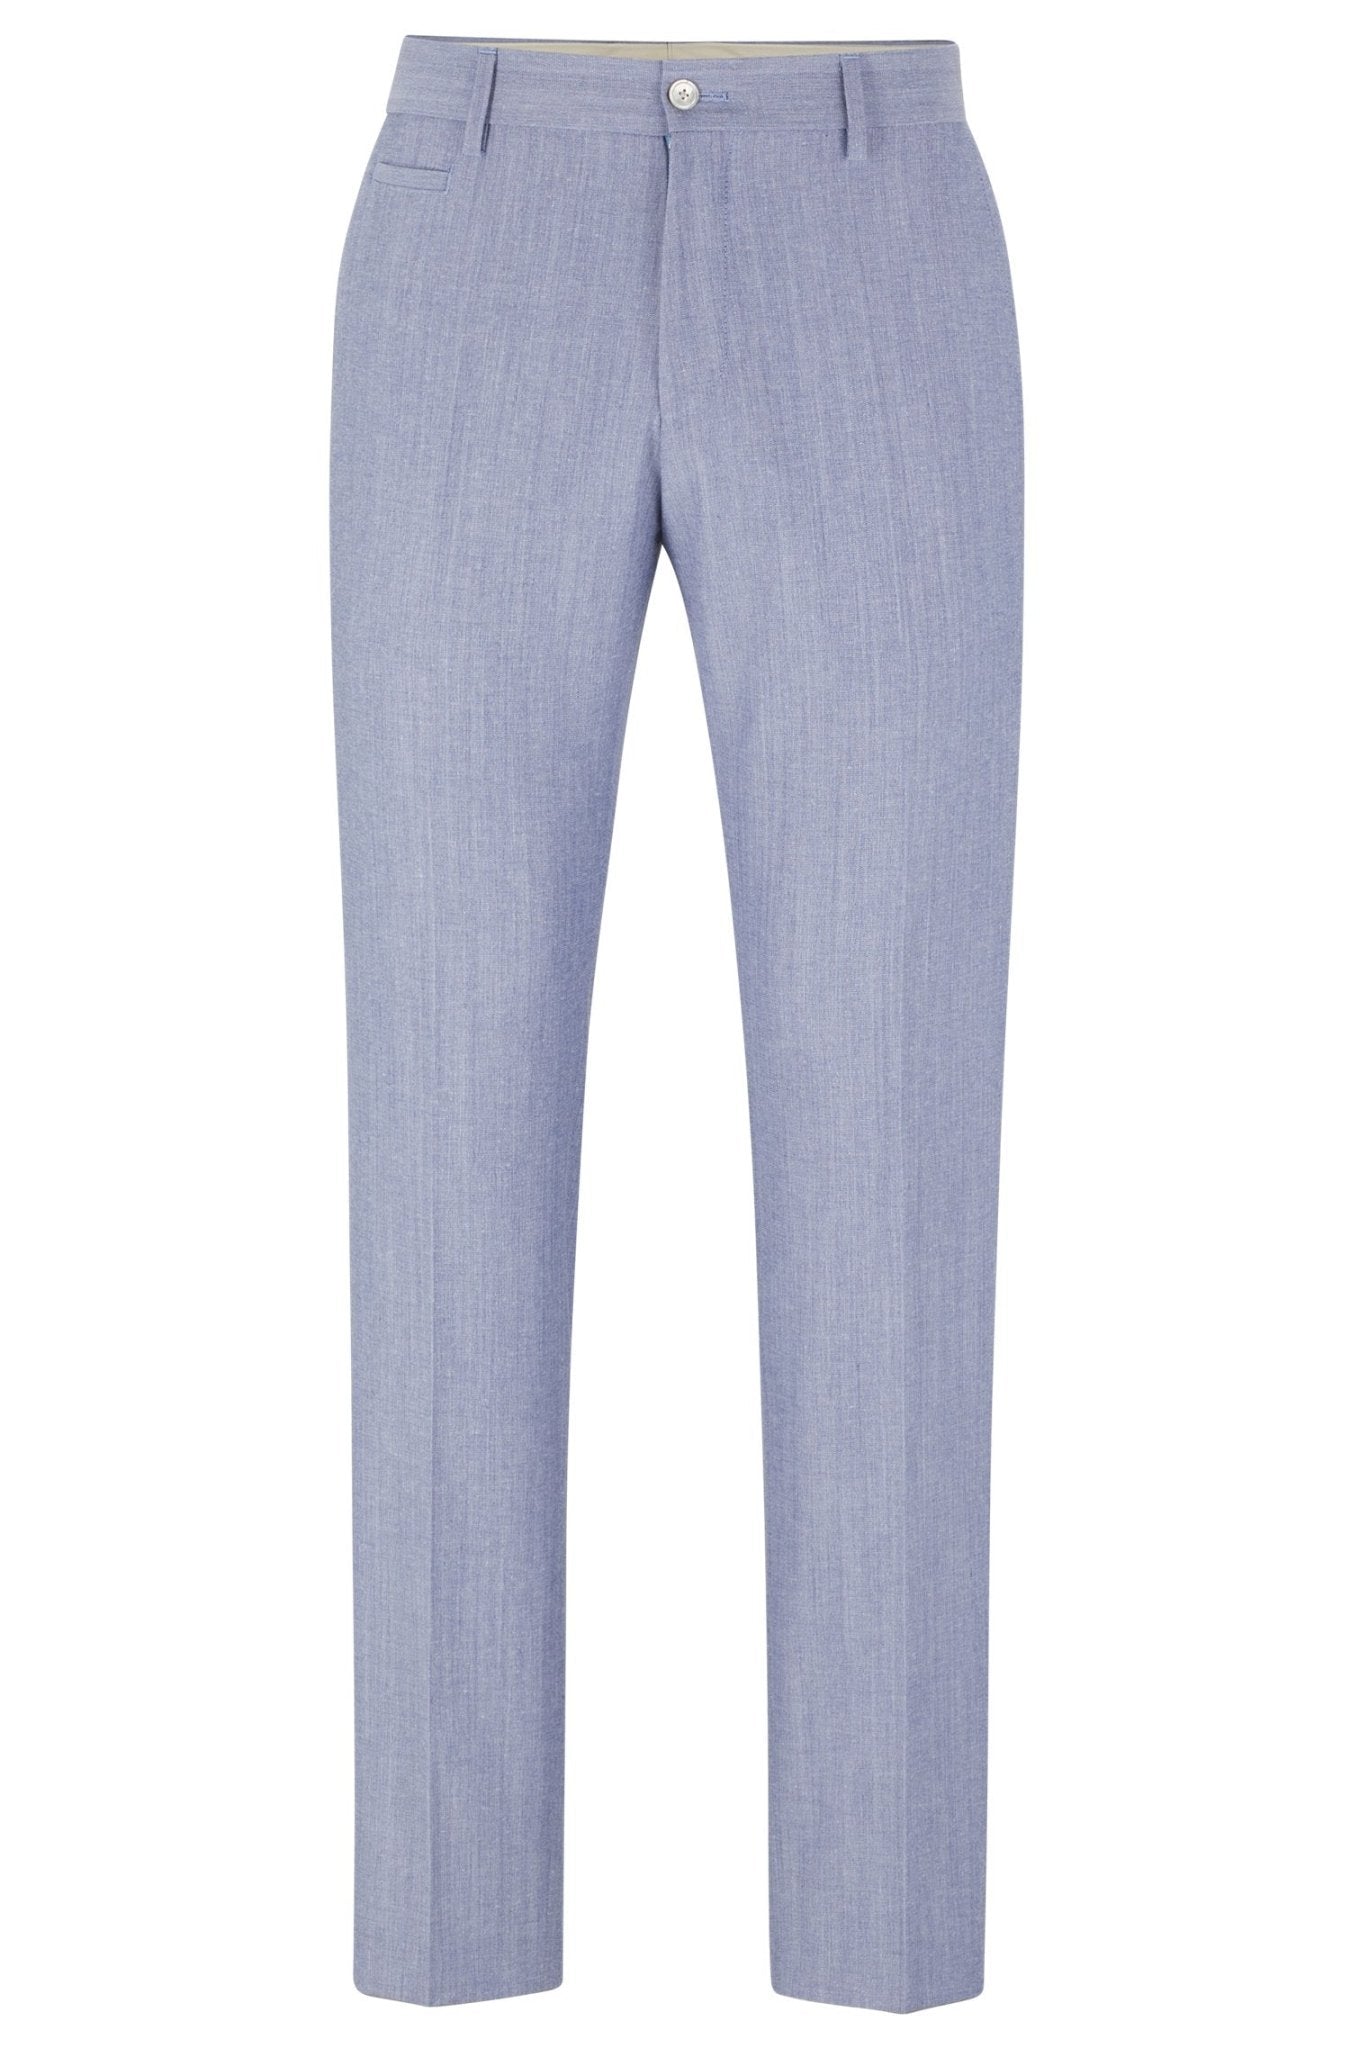 Hugo Boss Pantalon Business Bleu en coton mélangé - Lothaire